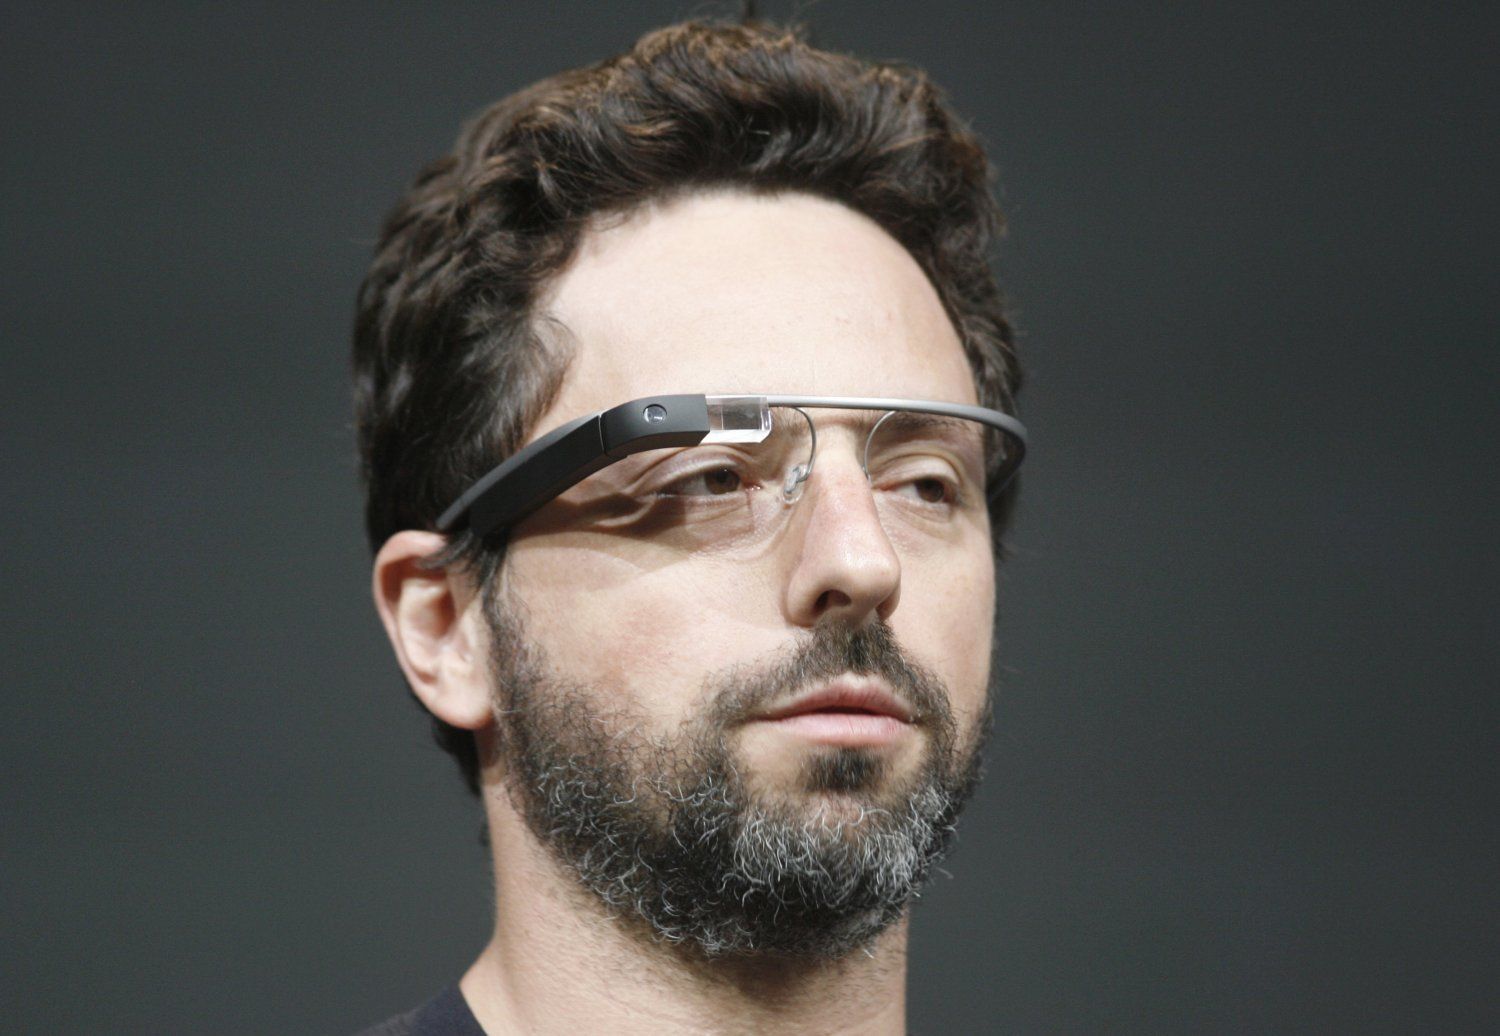 La faille critique des Google Glass découverte par Lookout date de deux mois. L’éditeur a immédiatement informé Google,&nbsp;qui a rapidement mis au point un correctif du firmware des lunettes. © Google